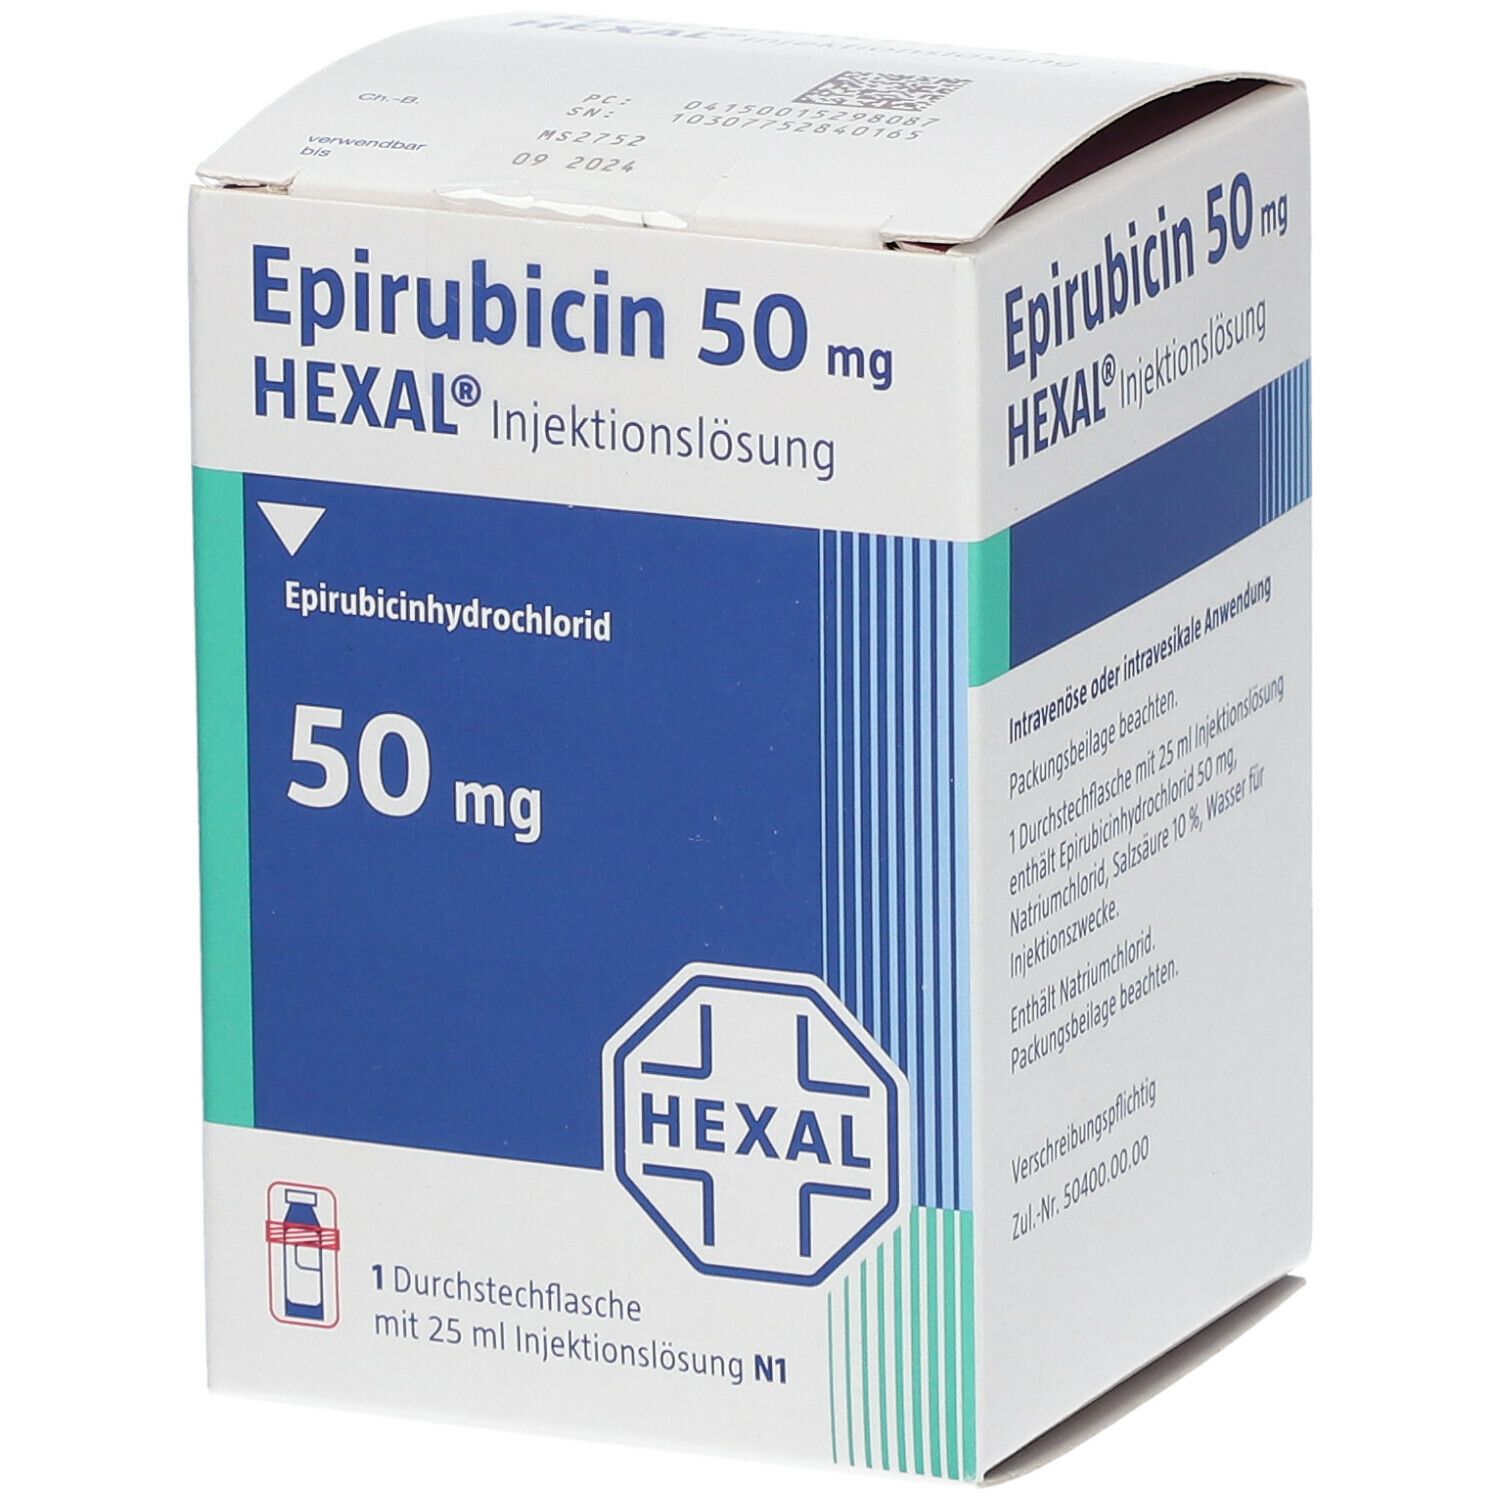 Epirubicin 50 mg HEXAL®